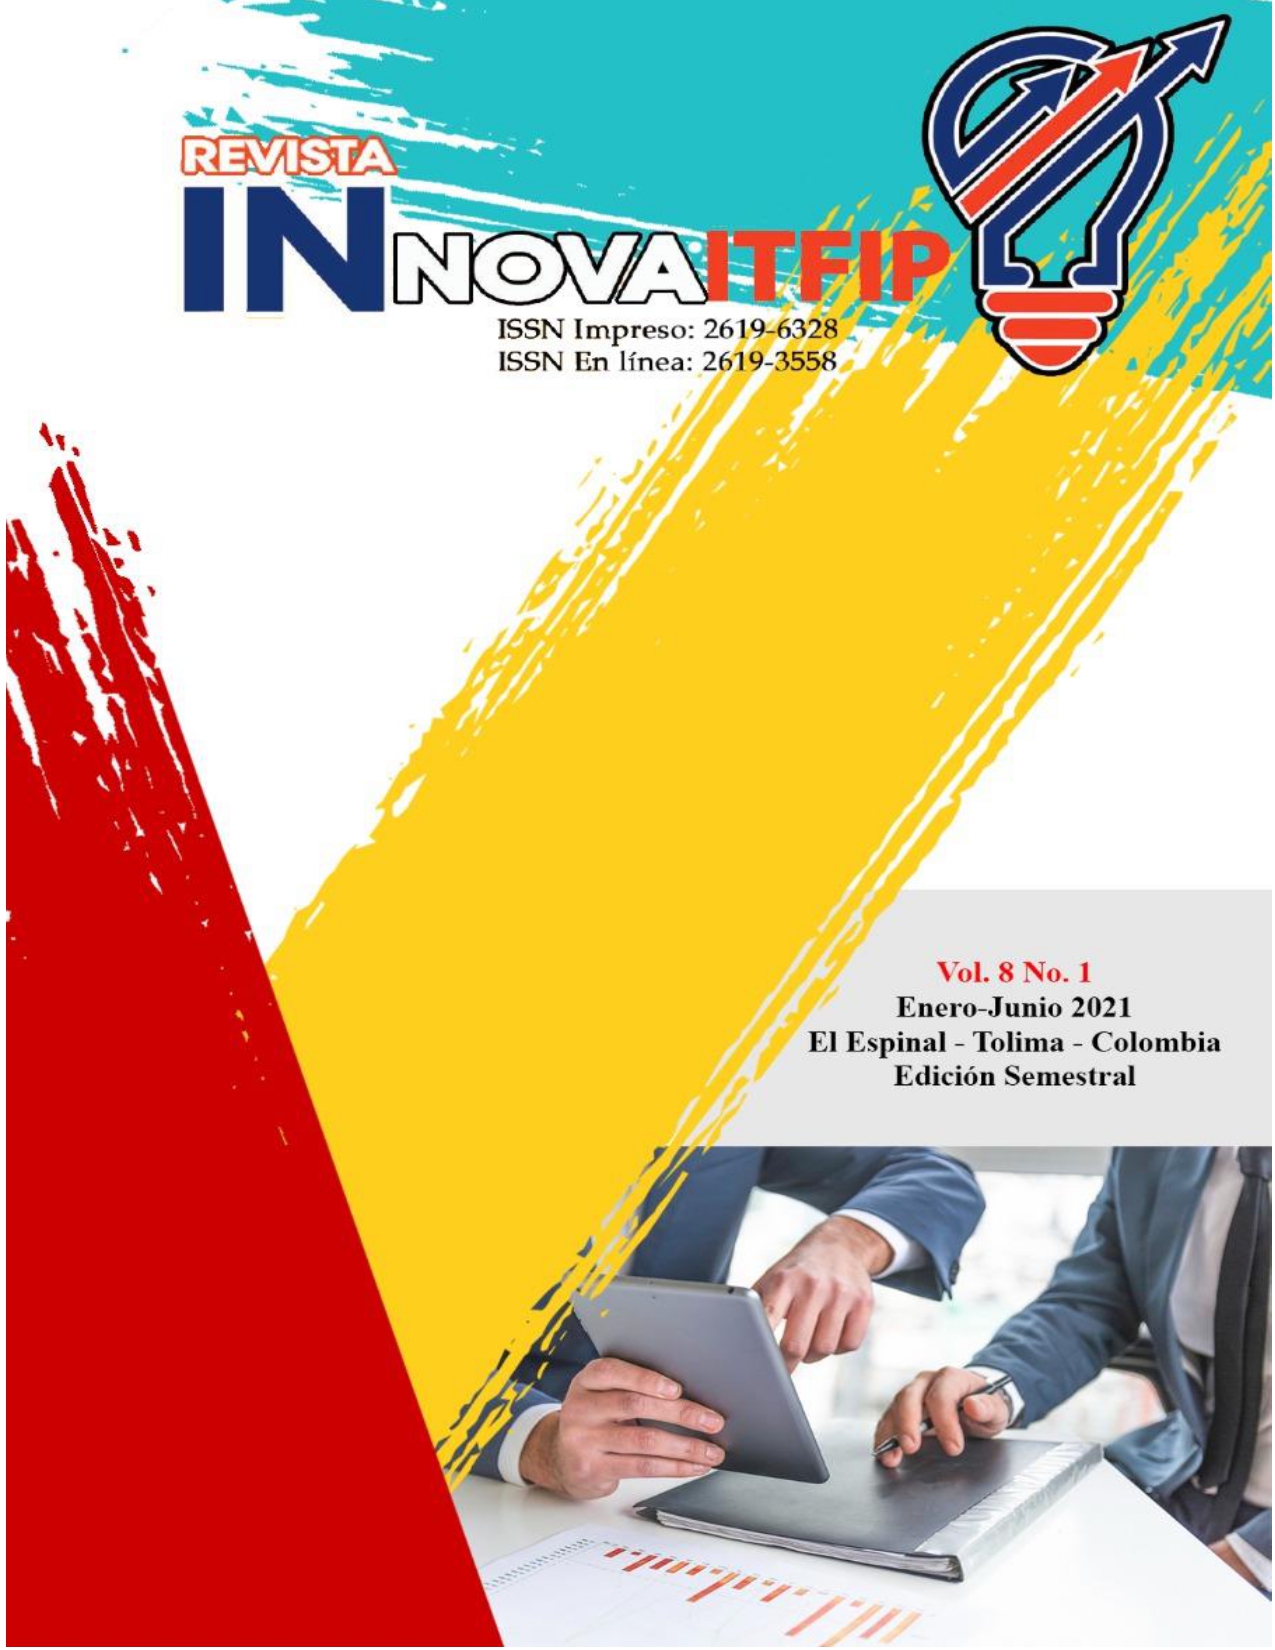                         Ver Vol. 8 Núm. 1 (2021): Revista Innova ITFIP
                    